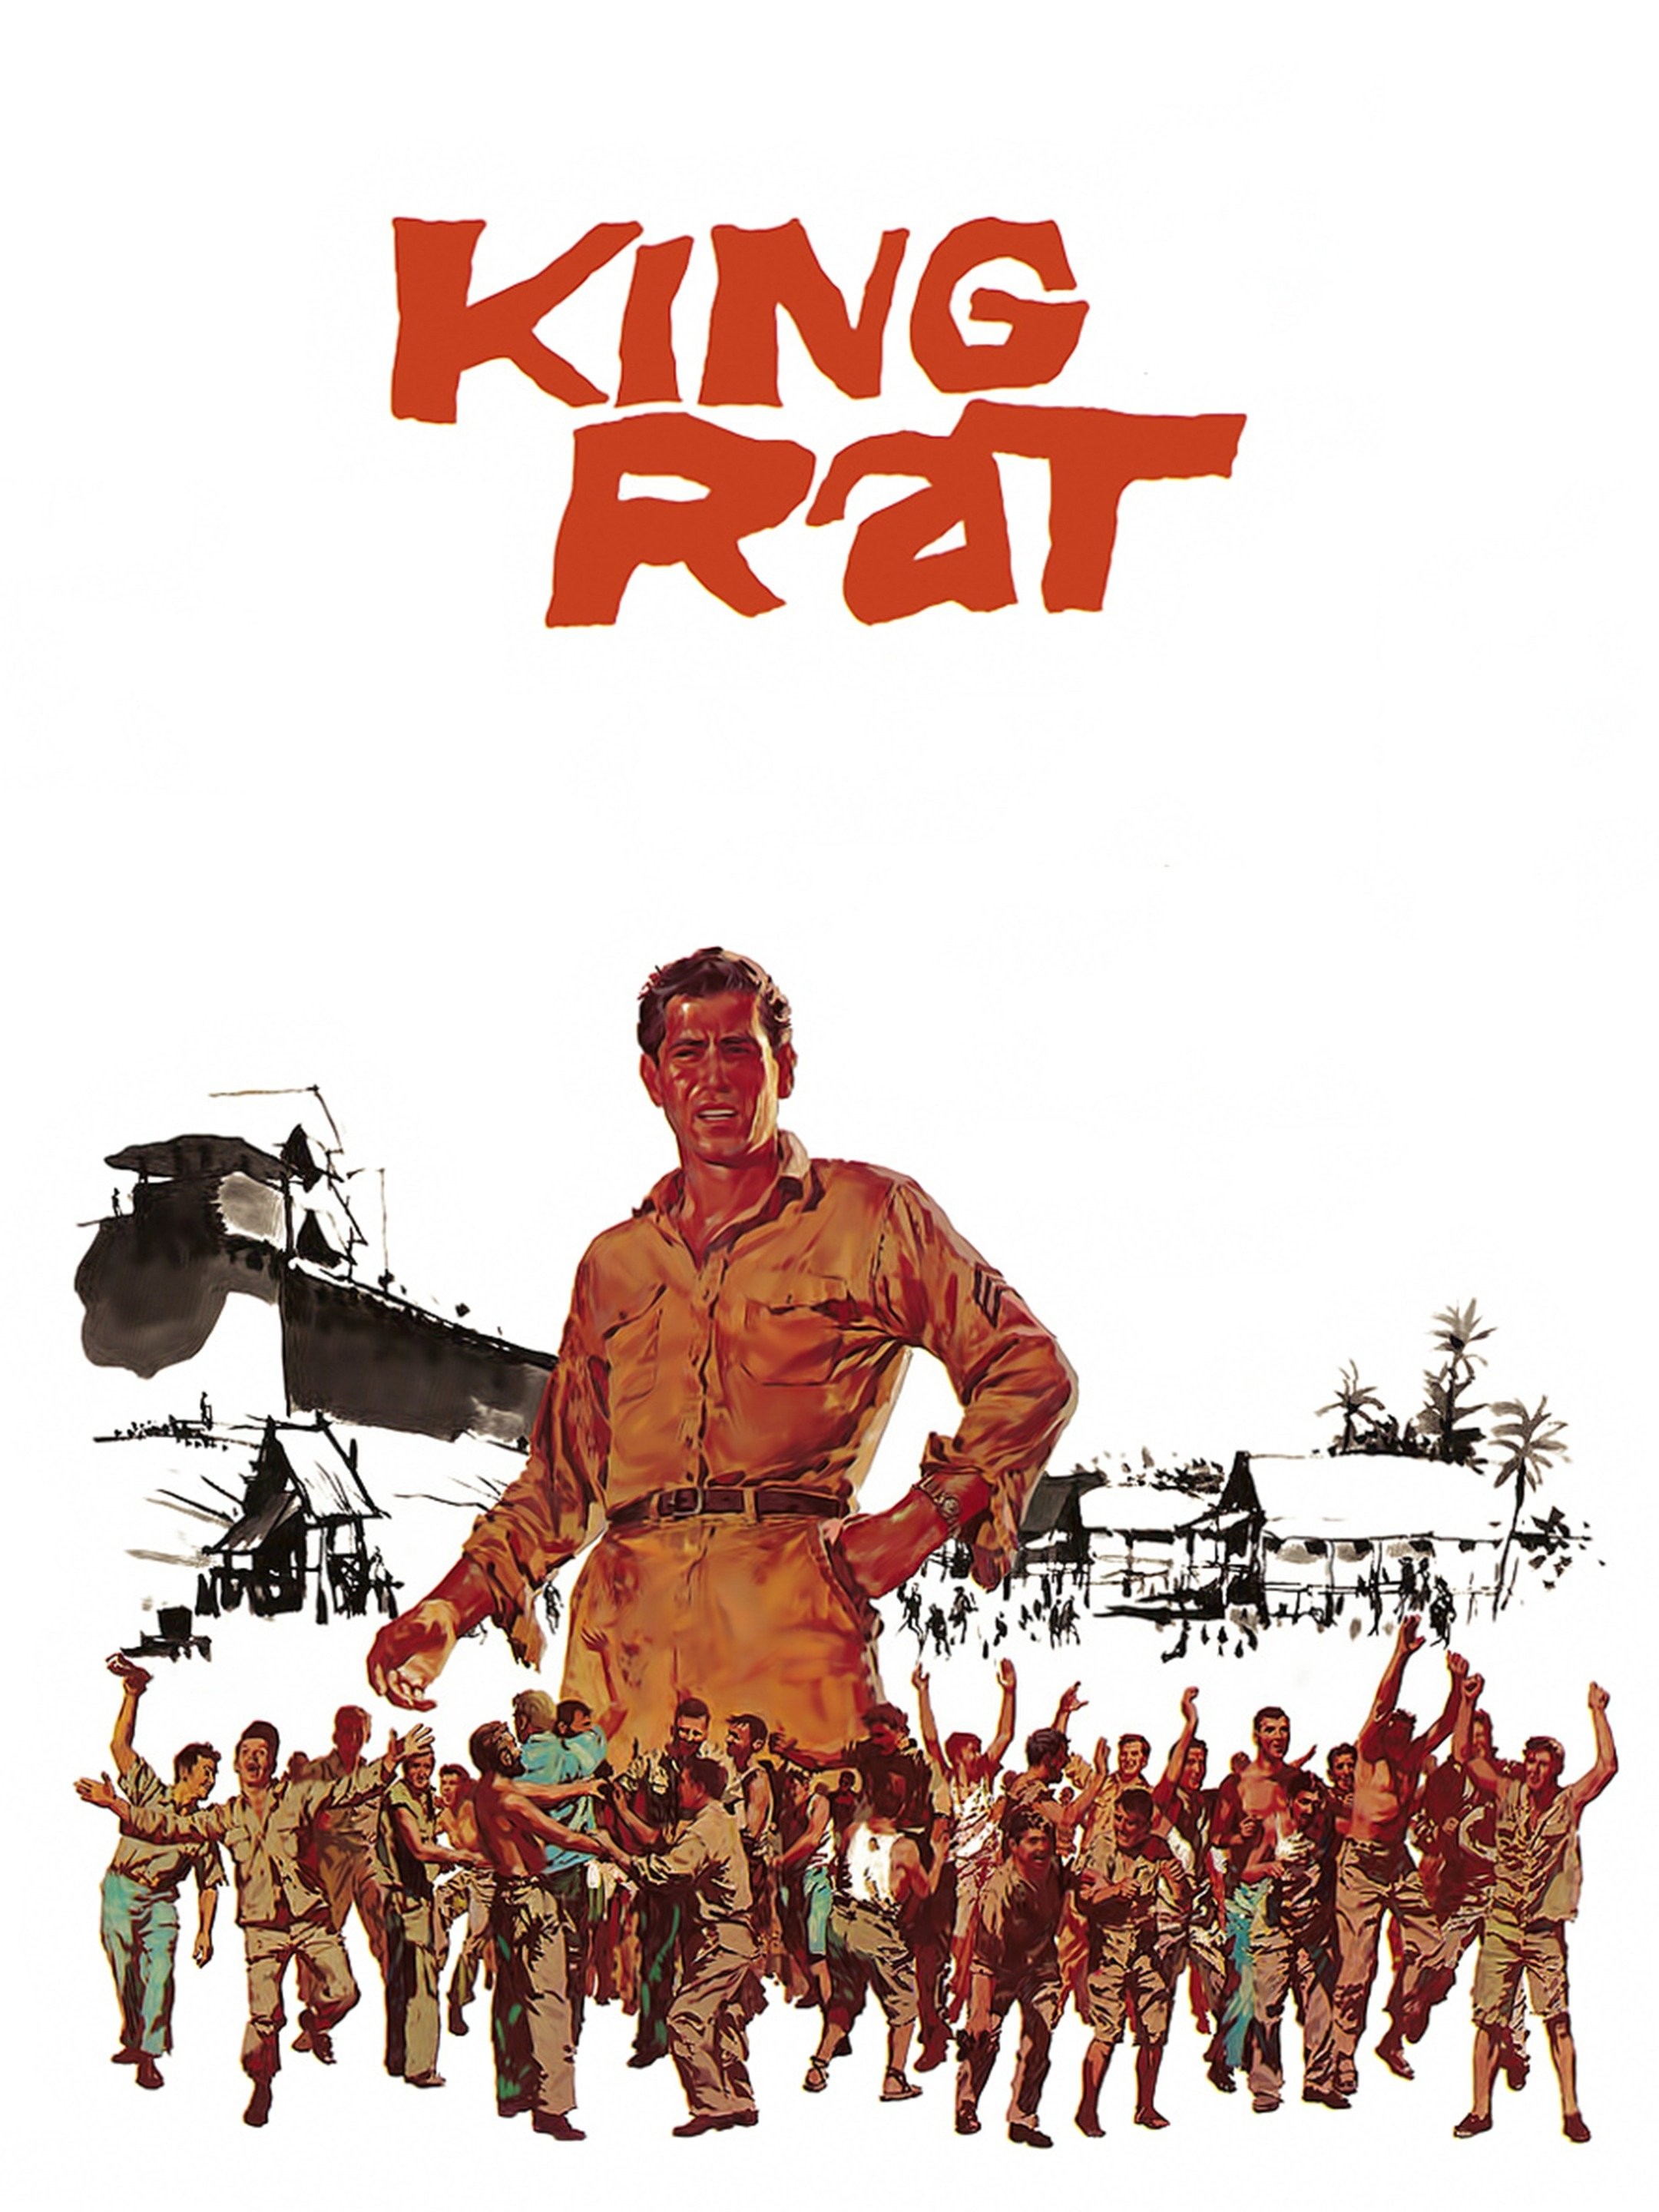 King Rat (film) - Wikipedia